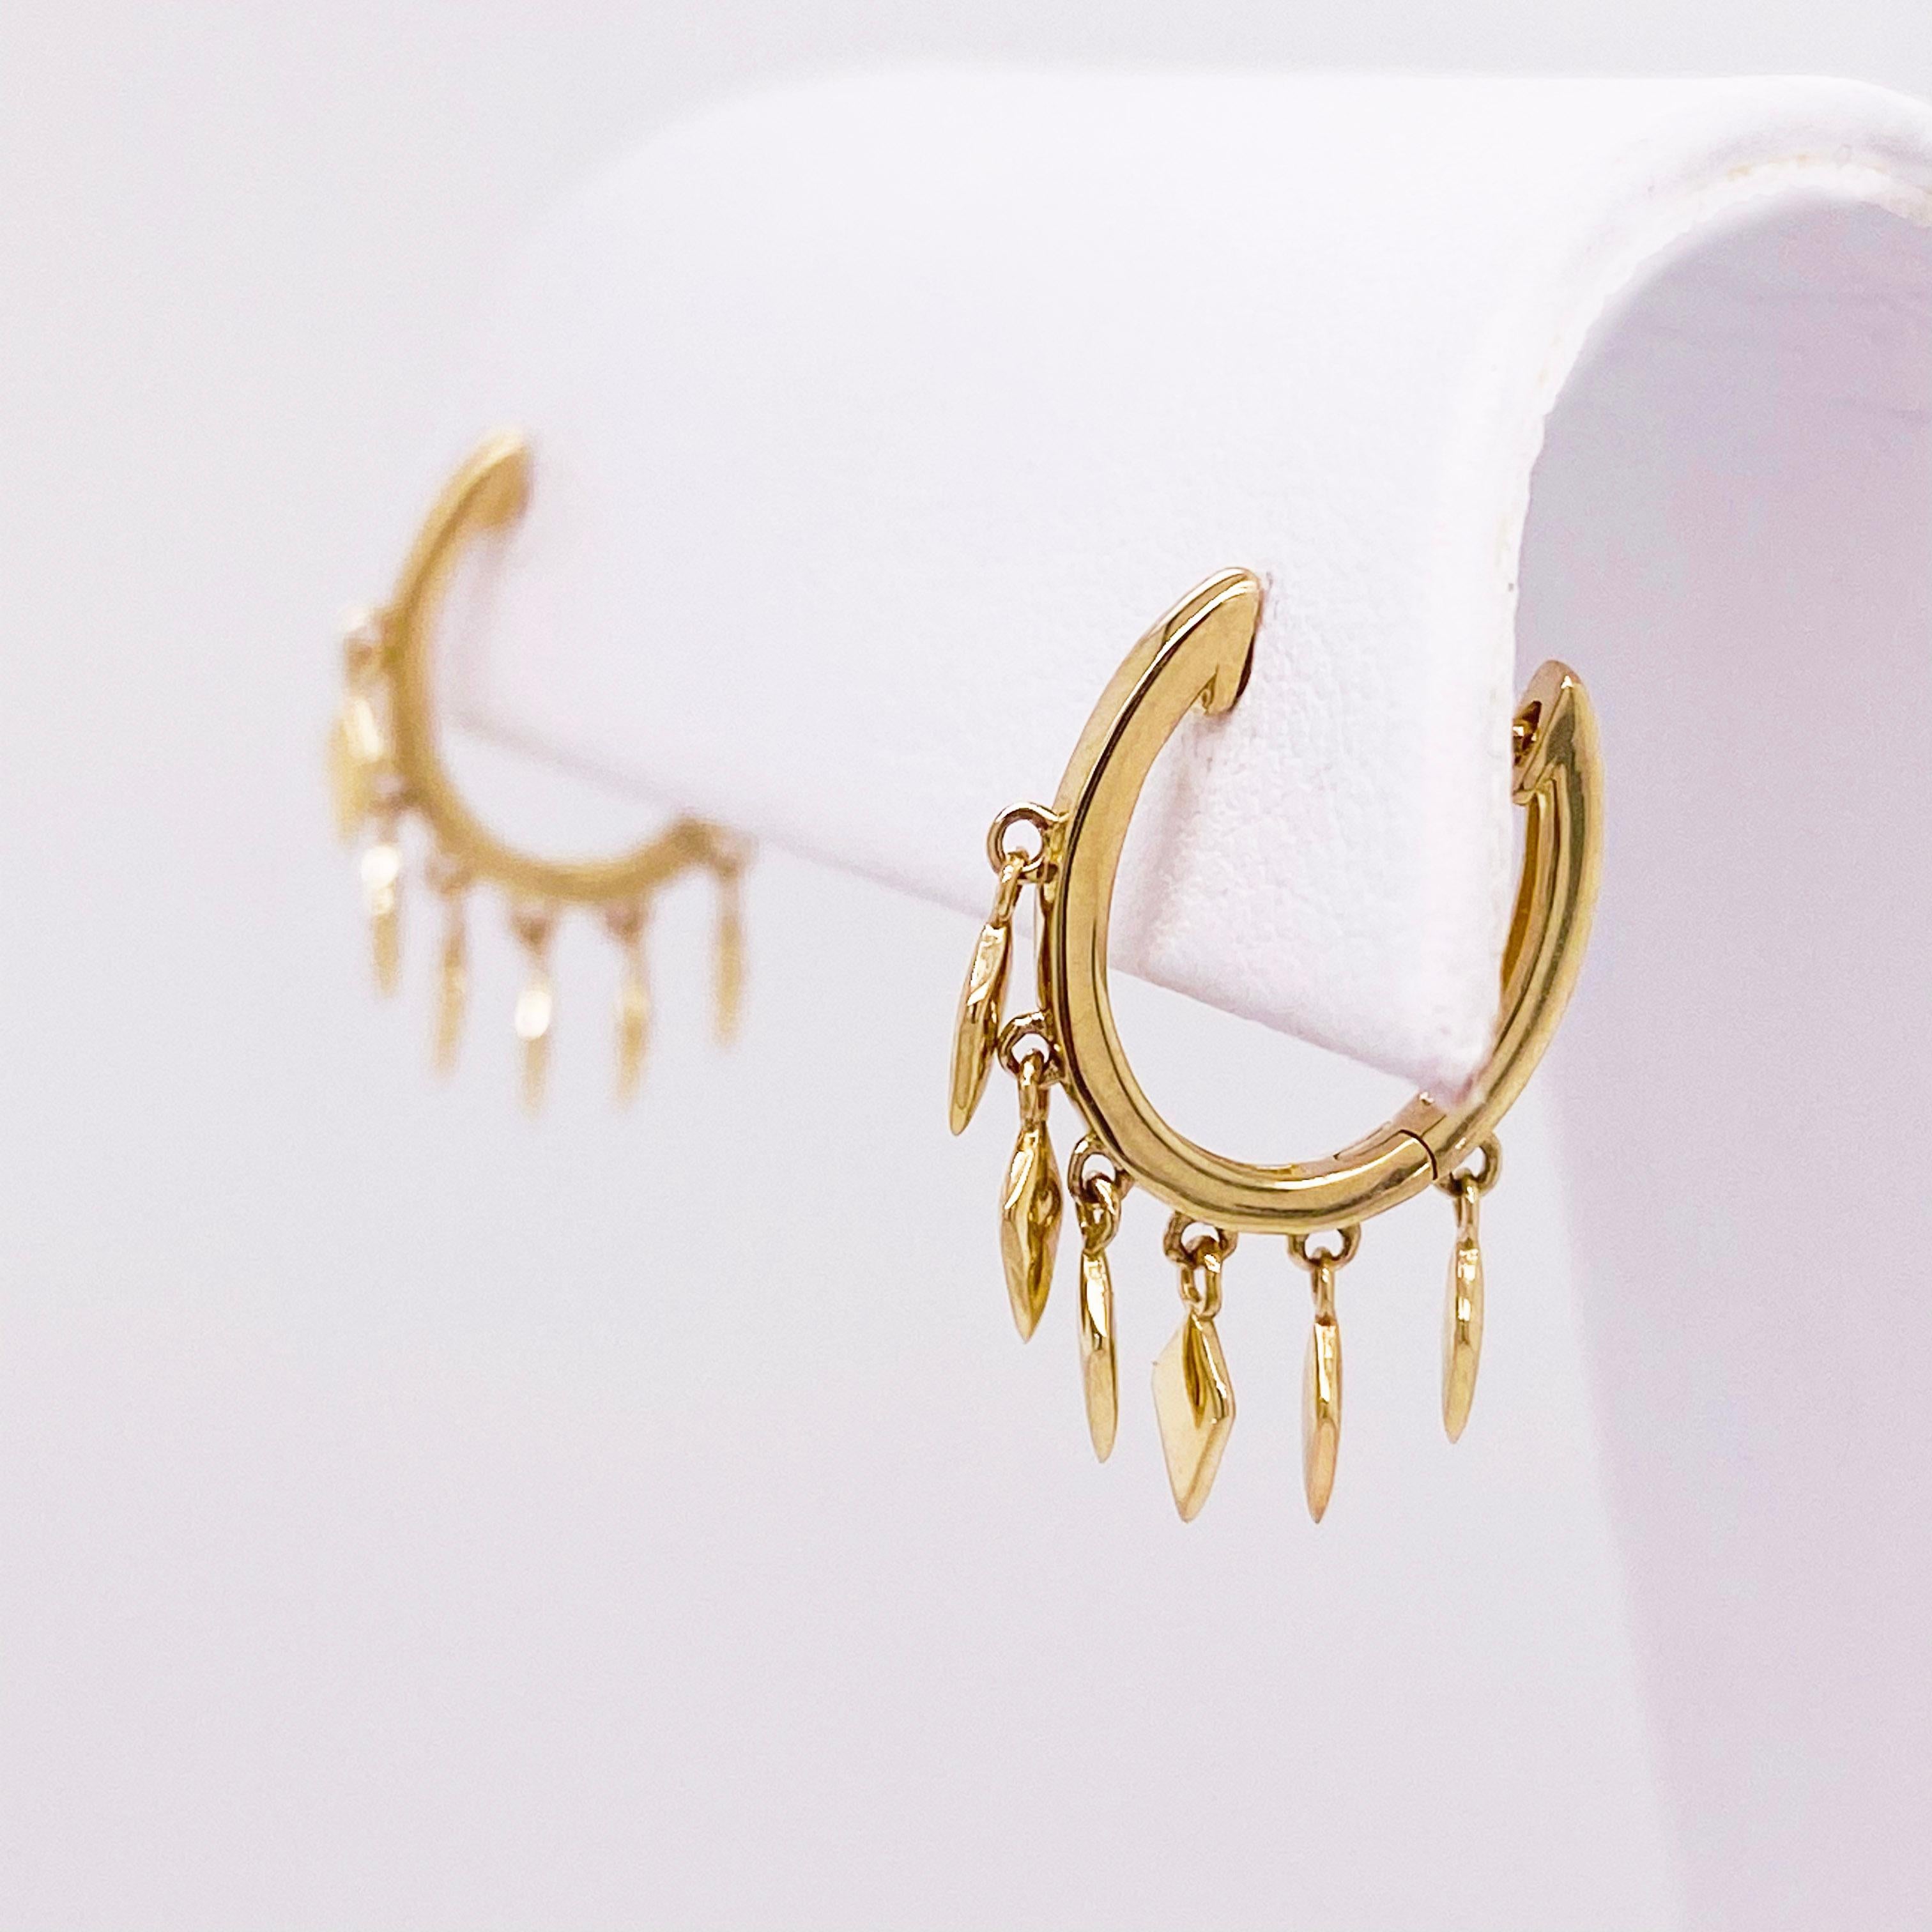 14k gold huggie earrings